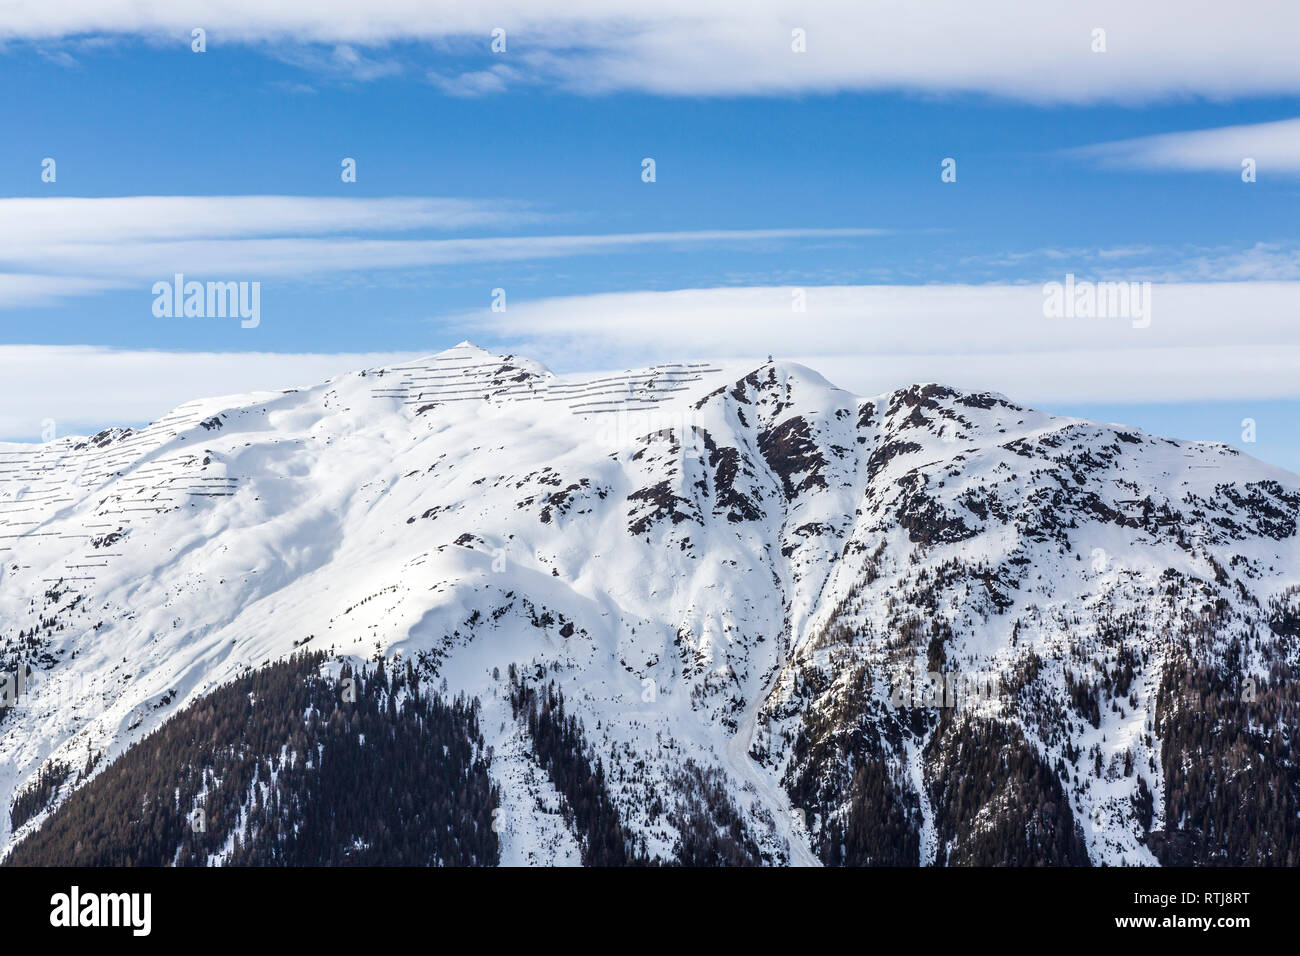 Paesaggio invernale, montagna innevata con ponte di neve delle strutture di protezione a valanga, Ski resort Vedi, Tirolo, Austria Foto Stock